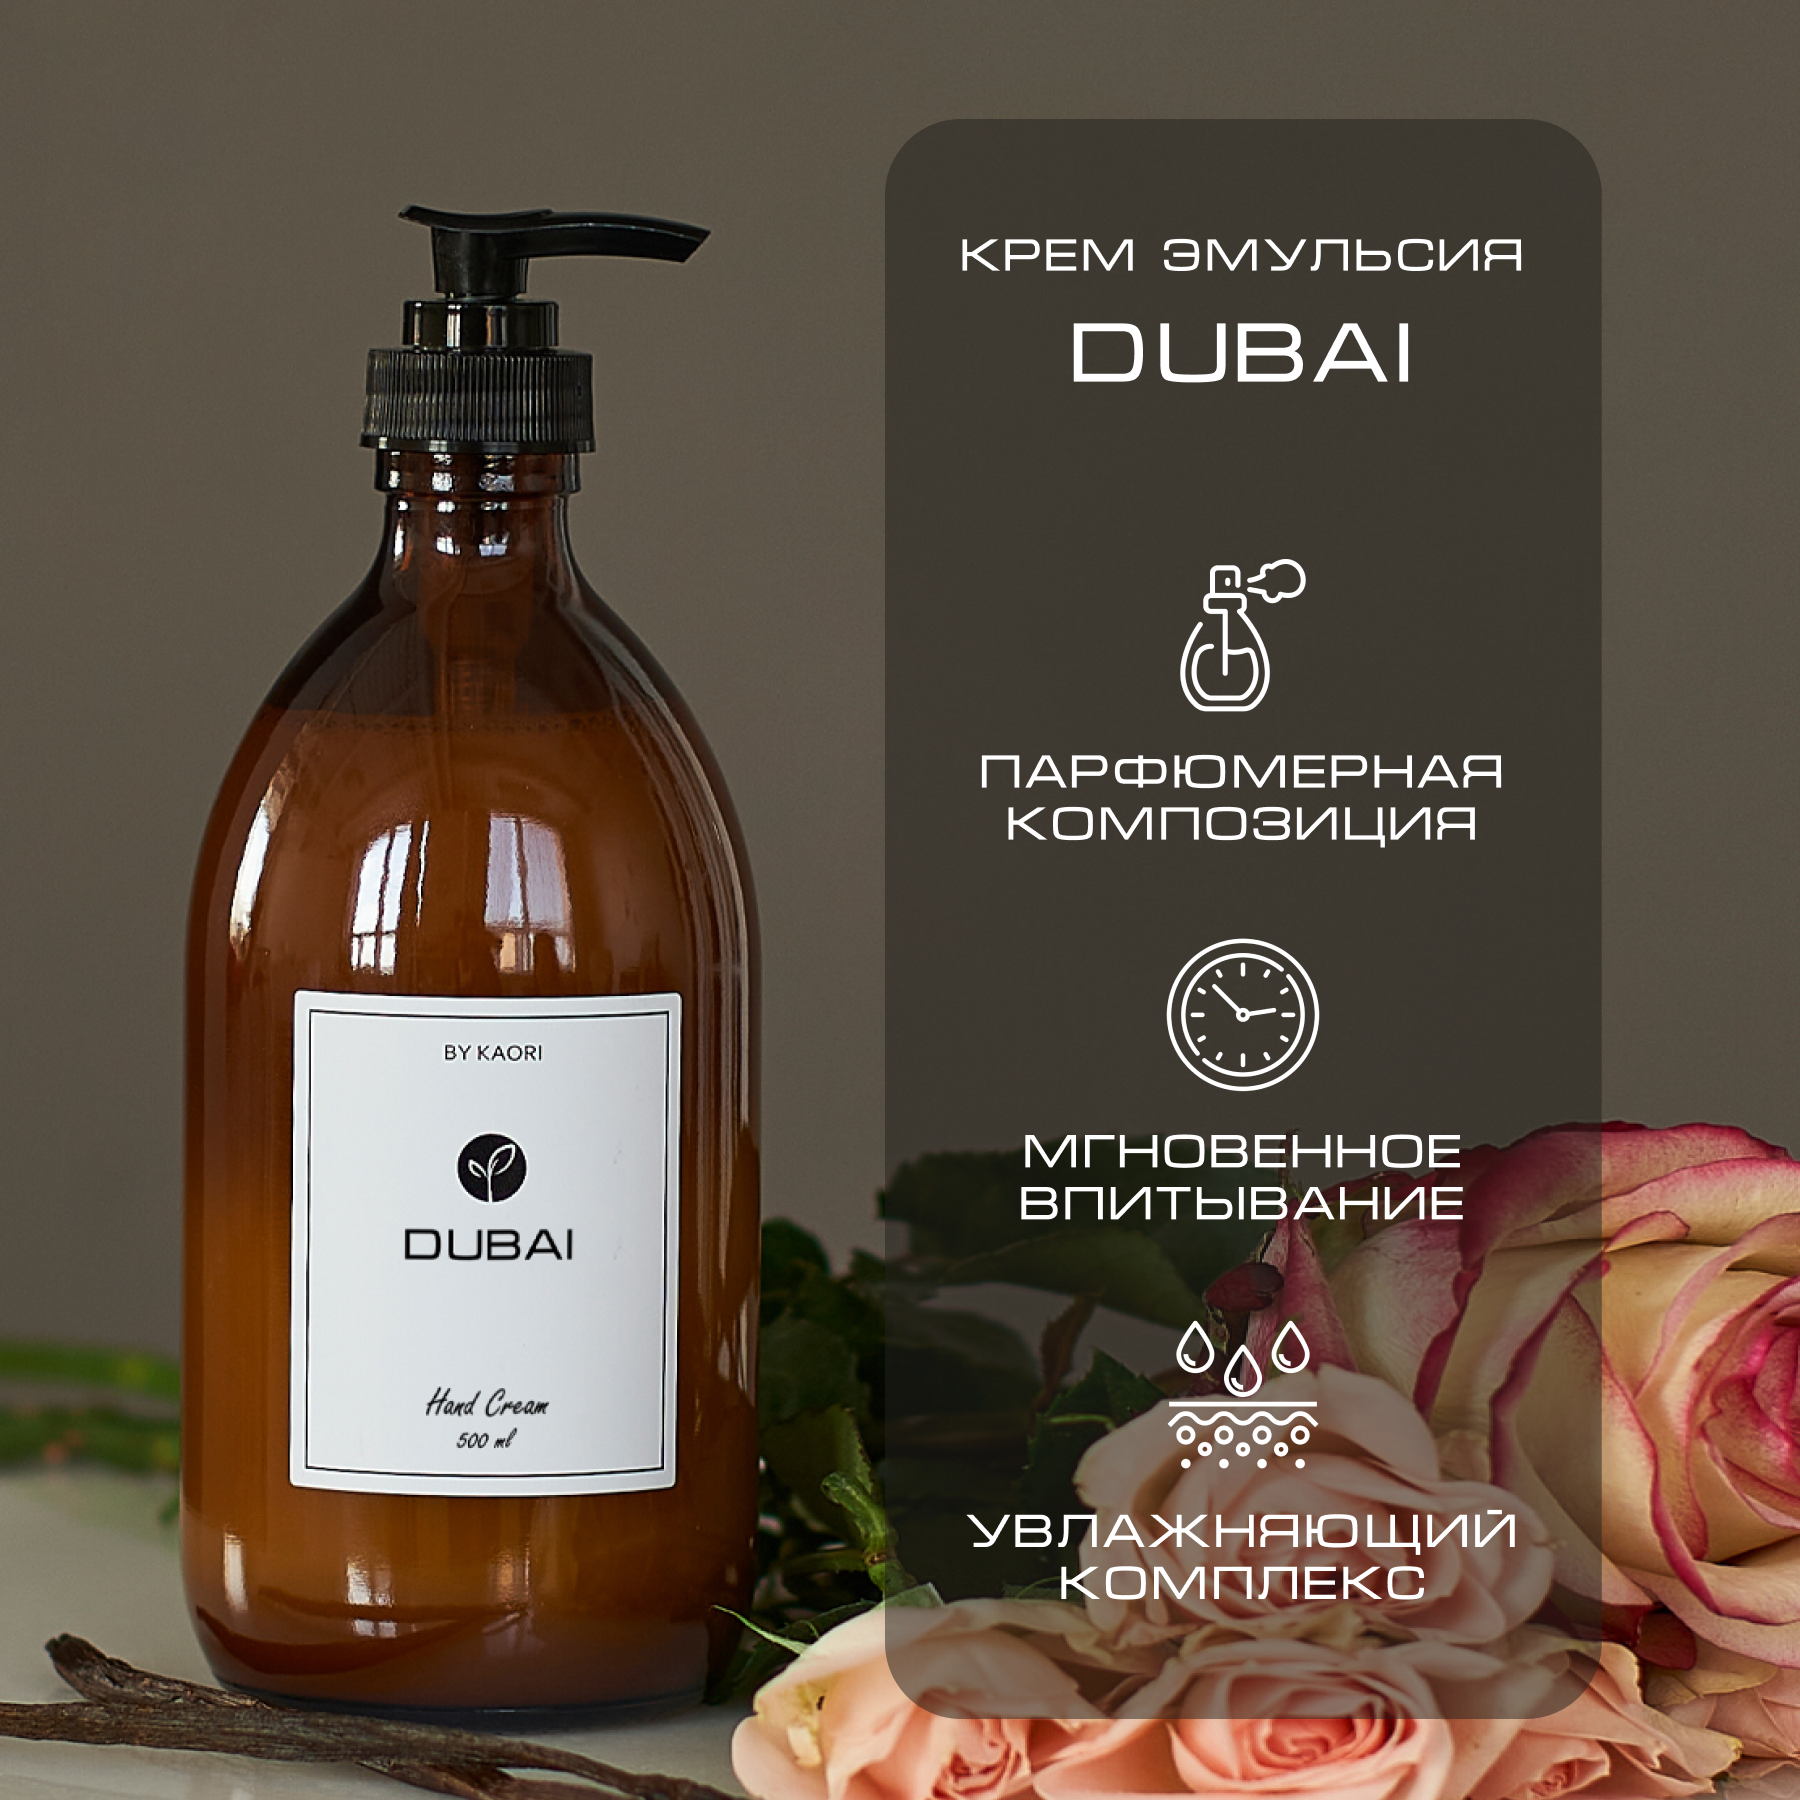 Крем эмульсия для рук By Kaori крем увлажняющий парфюмированный аромат Dubai 500 мл набор подарочный by kaori call me парфюмированный крем для рук и мыло твердое dubai